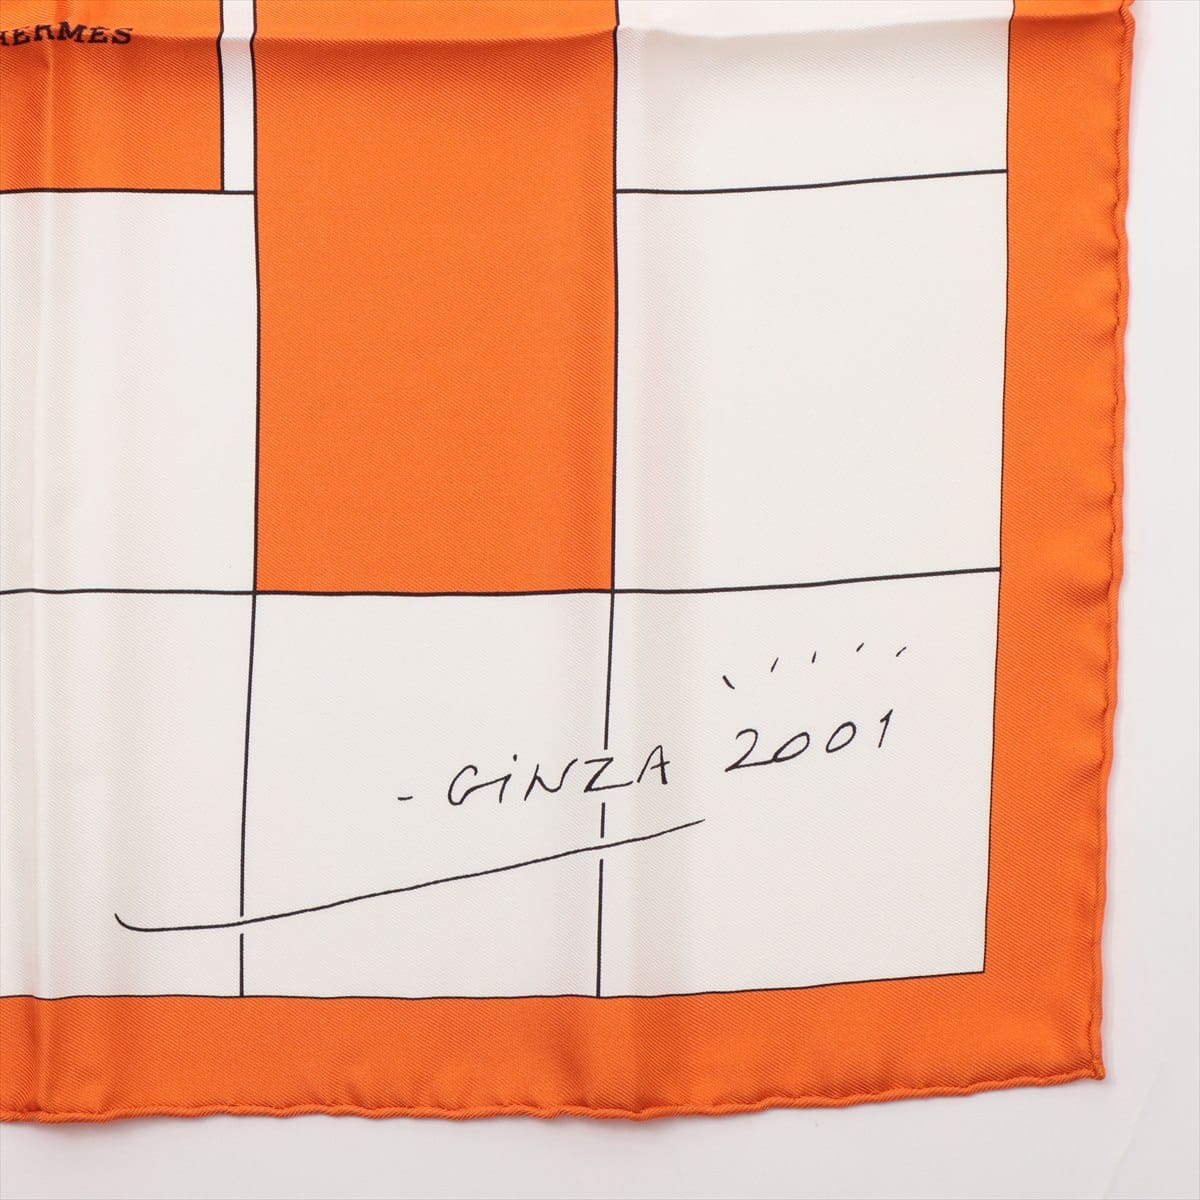 エルメス スカーフ シルク オレンジ カレ45 スクエア GINZA2001 2001年 銀座店オープン記念限定